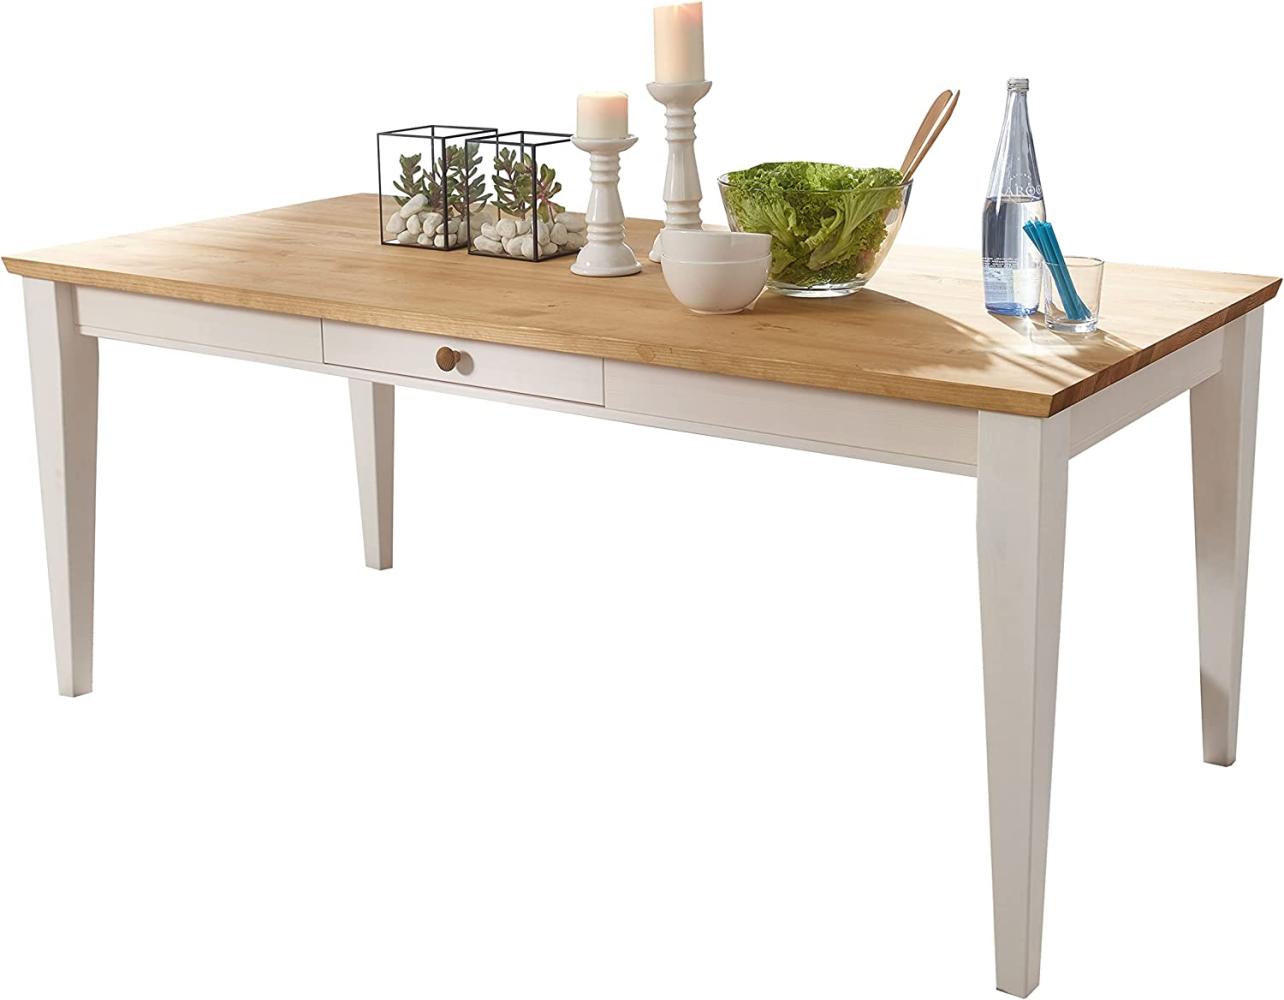 Woodroom Oslo Esstisch Tisch, Kiefer massiv, weiß gewachst, 180x90 cm Bild 1